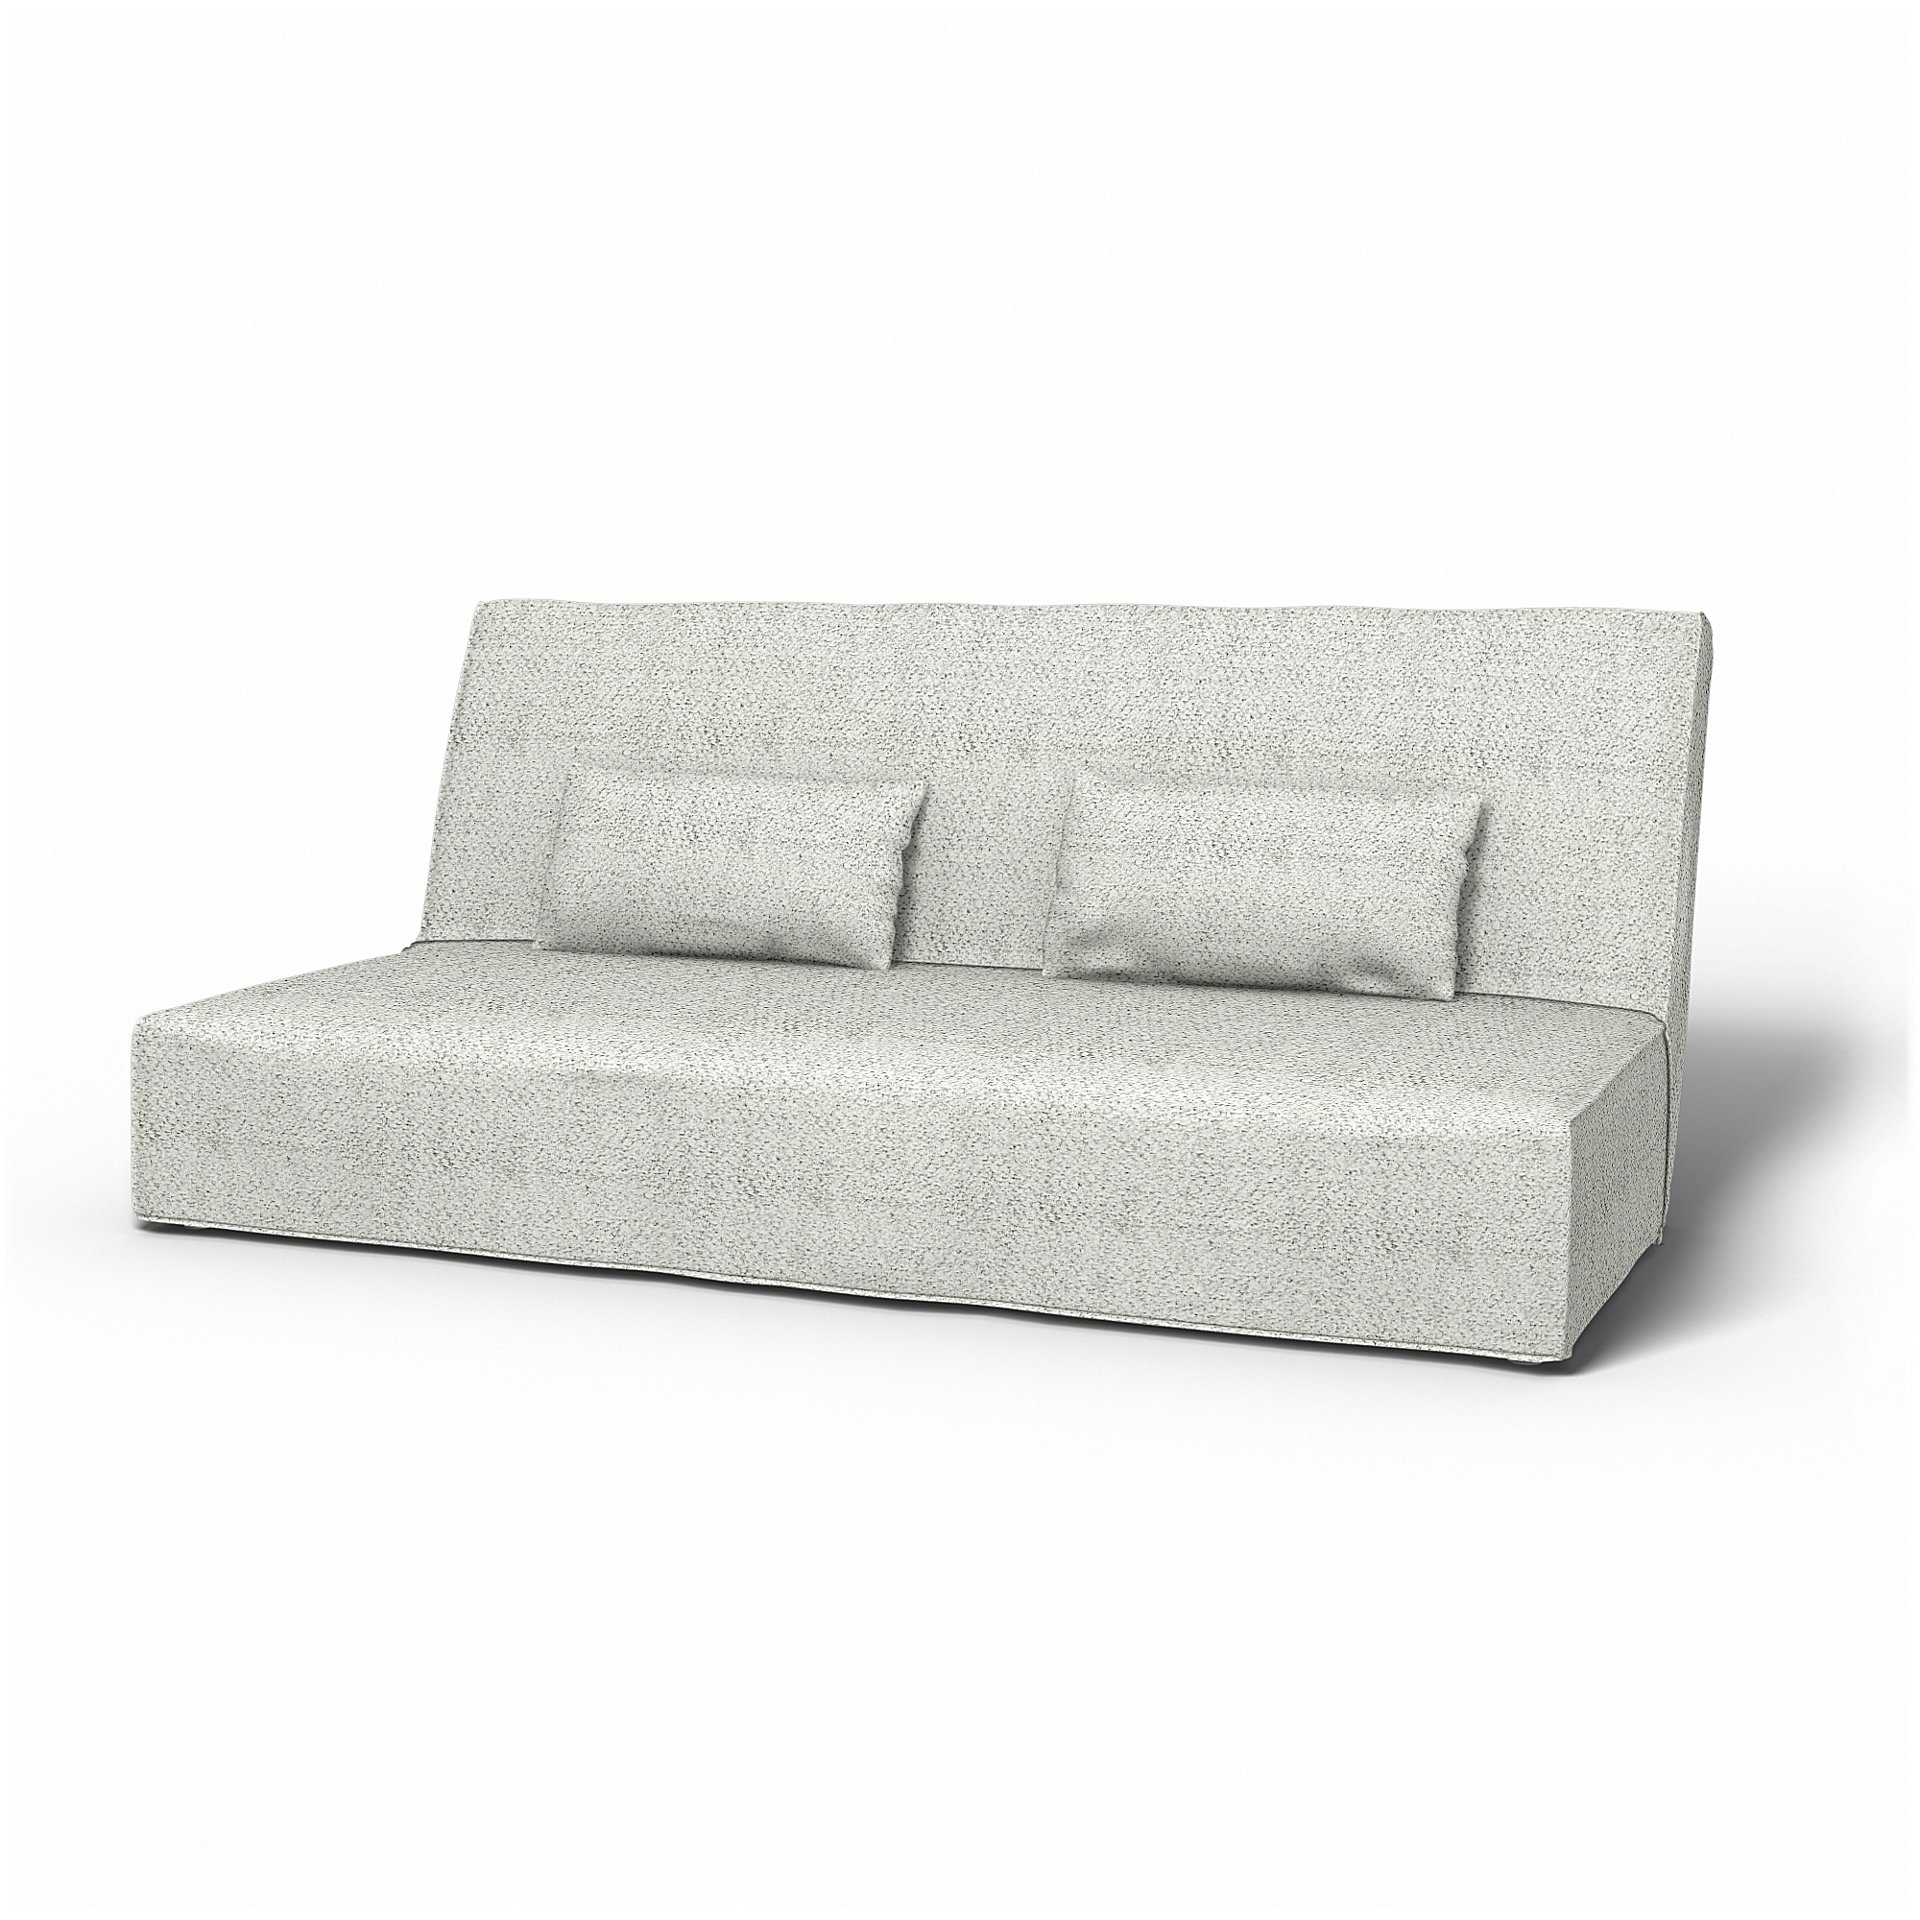 Fundas para sofás cama Beddinge de IKEA - Bemz | Bemz